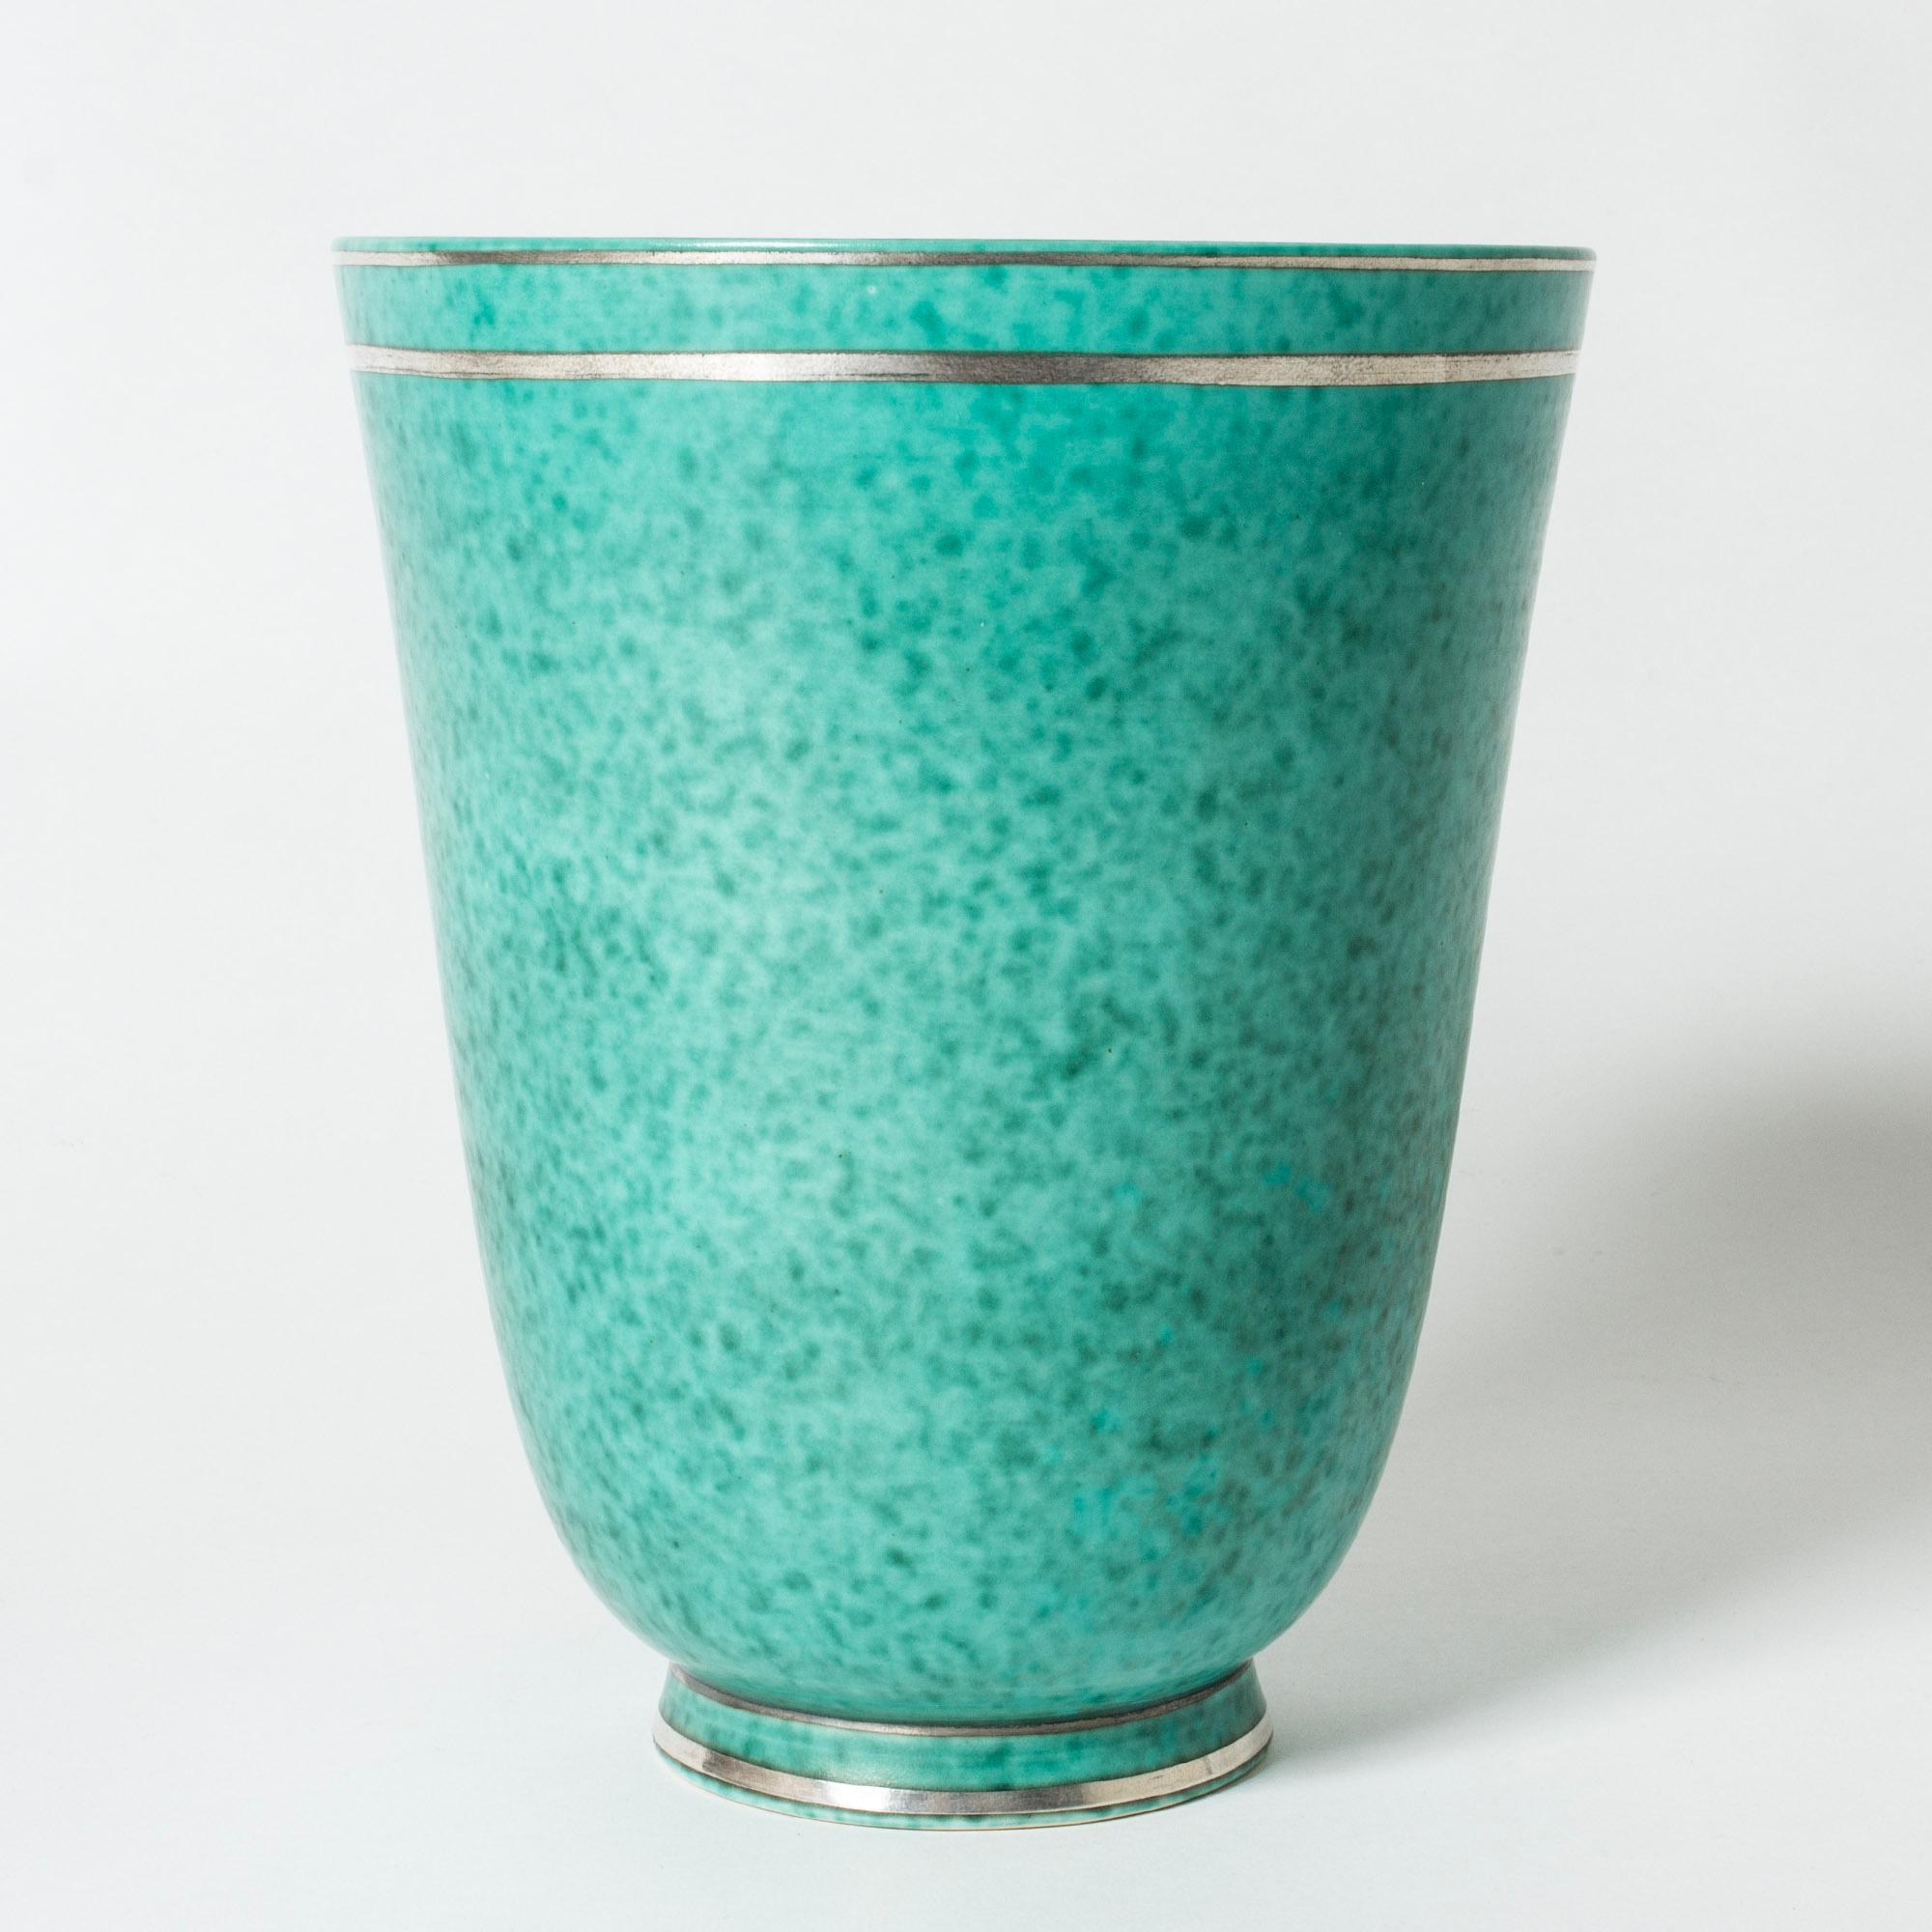 Scandinavian Modern Midcentury Stoneware “Argenta” Vase by Wilhelm Kåge, Gustavsberg, Sweden, 1940s